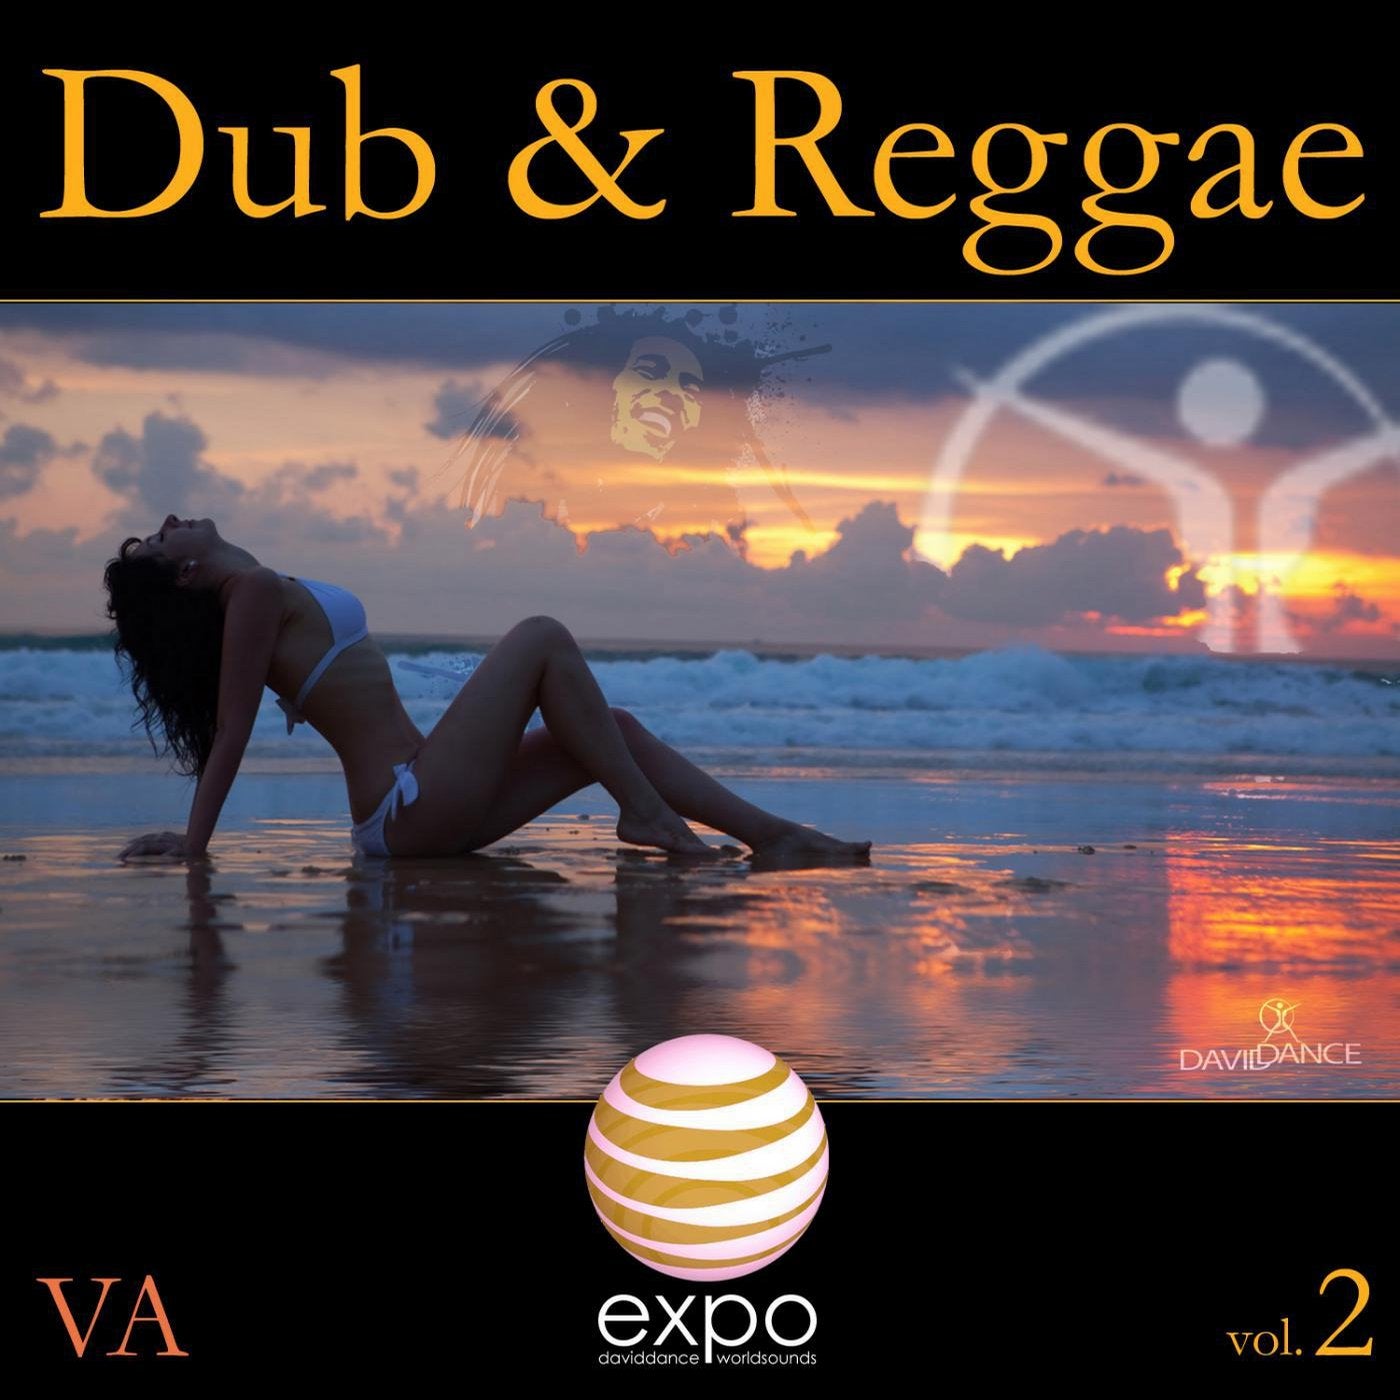 Dub & Reggae Vol. 2